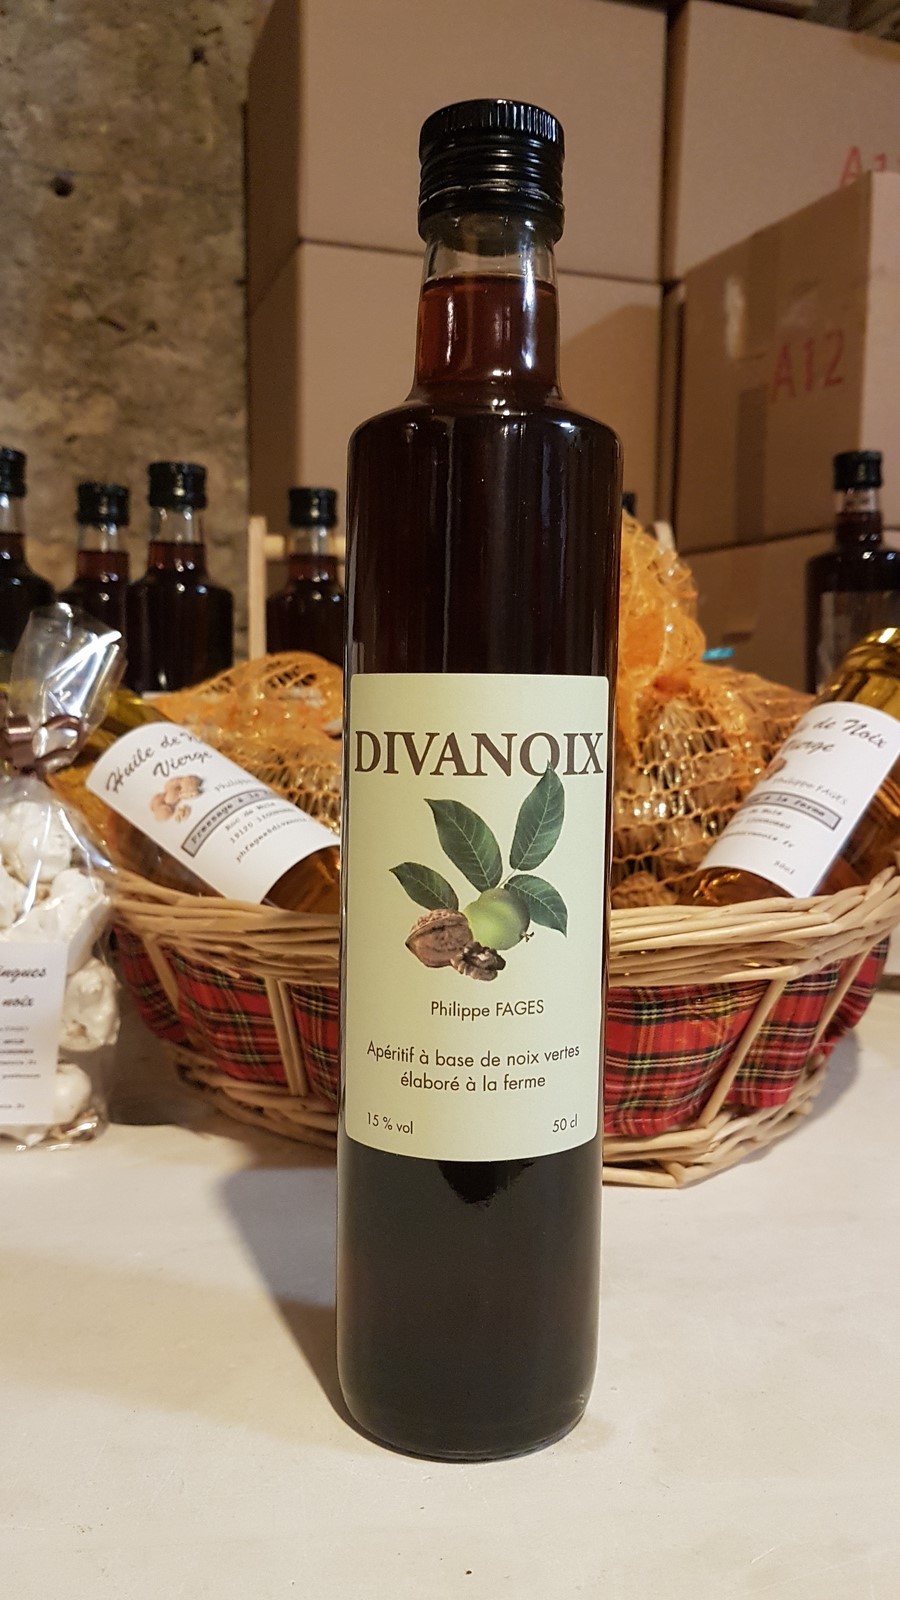 Apéritif vin de noix Divanoix 50cl